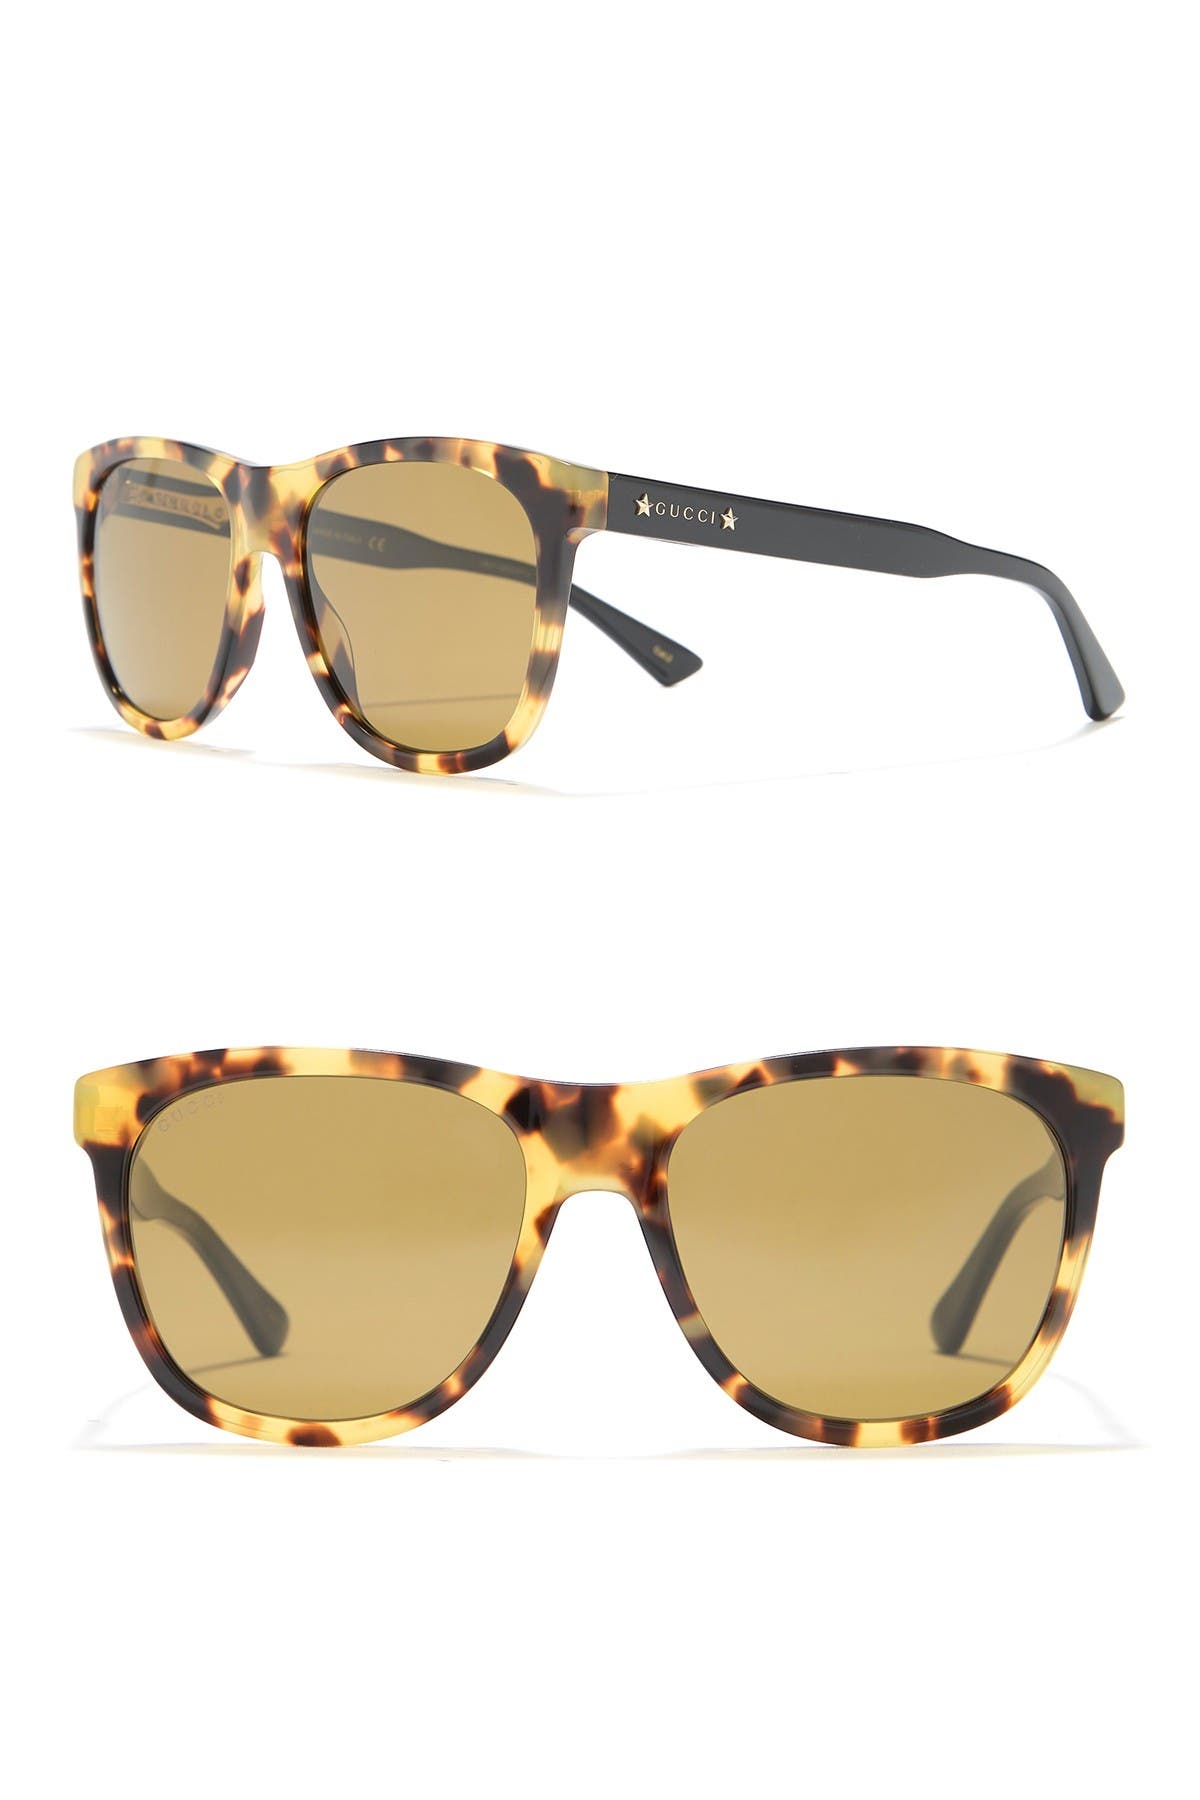 GUCCI | 55mm Square Sunglasses 